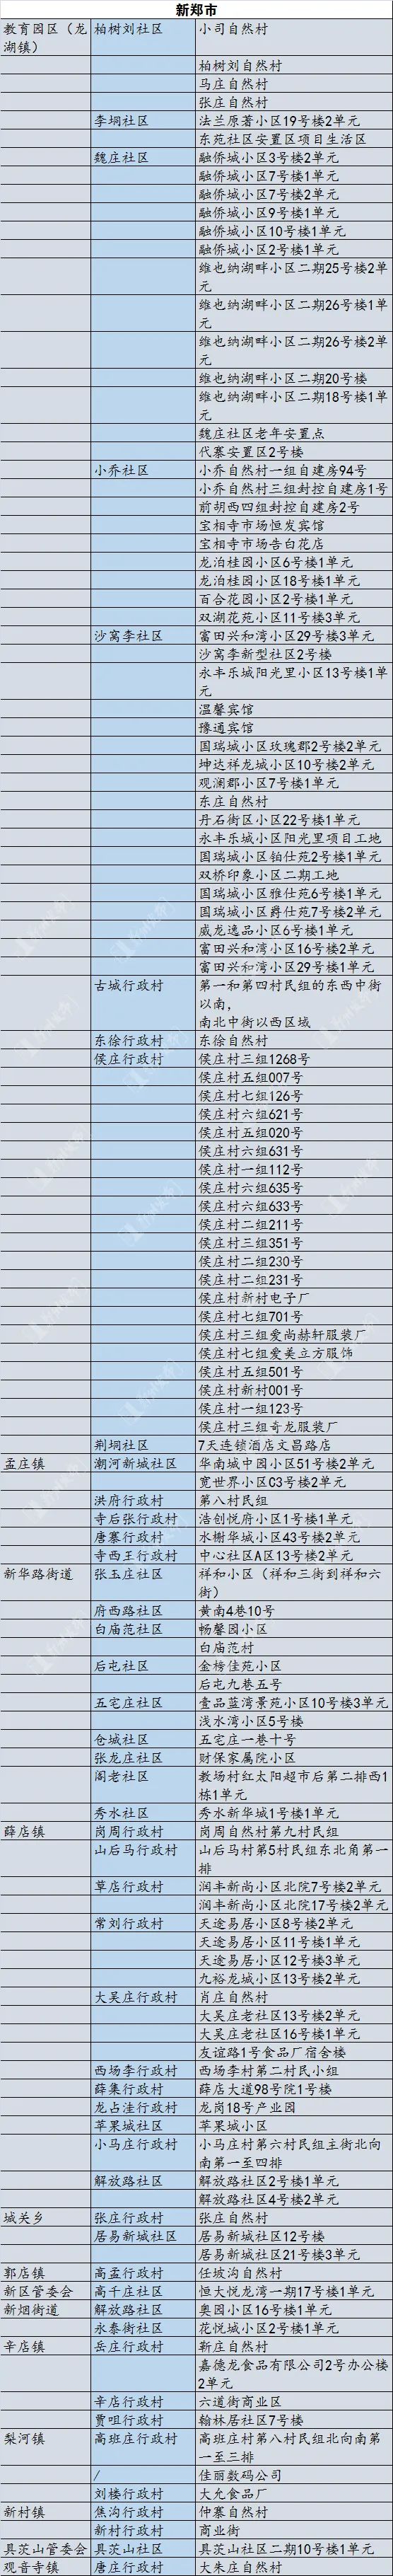 郑州市公布现有高风险区名单！其他区域恢复正常生产生活秩序